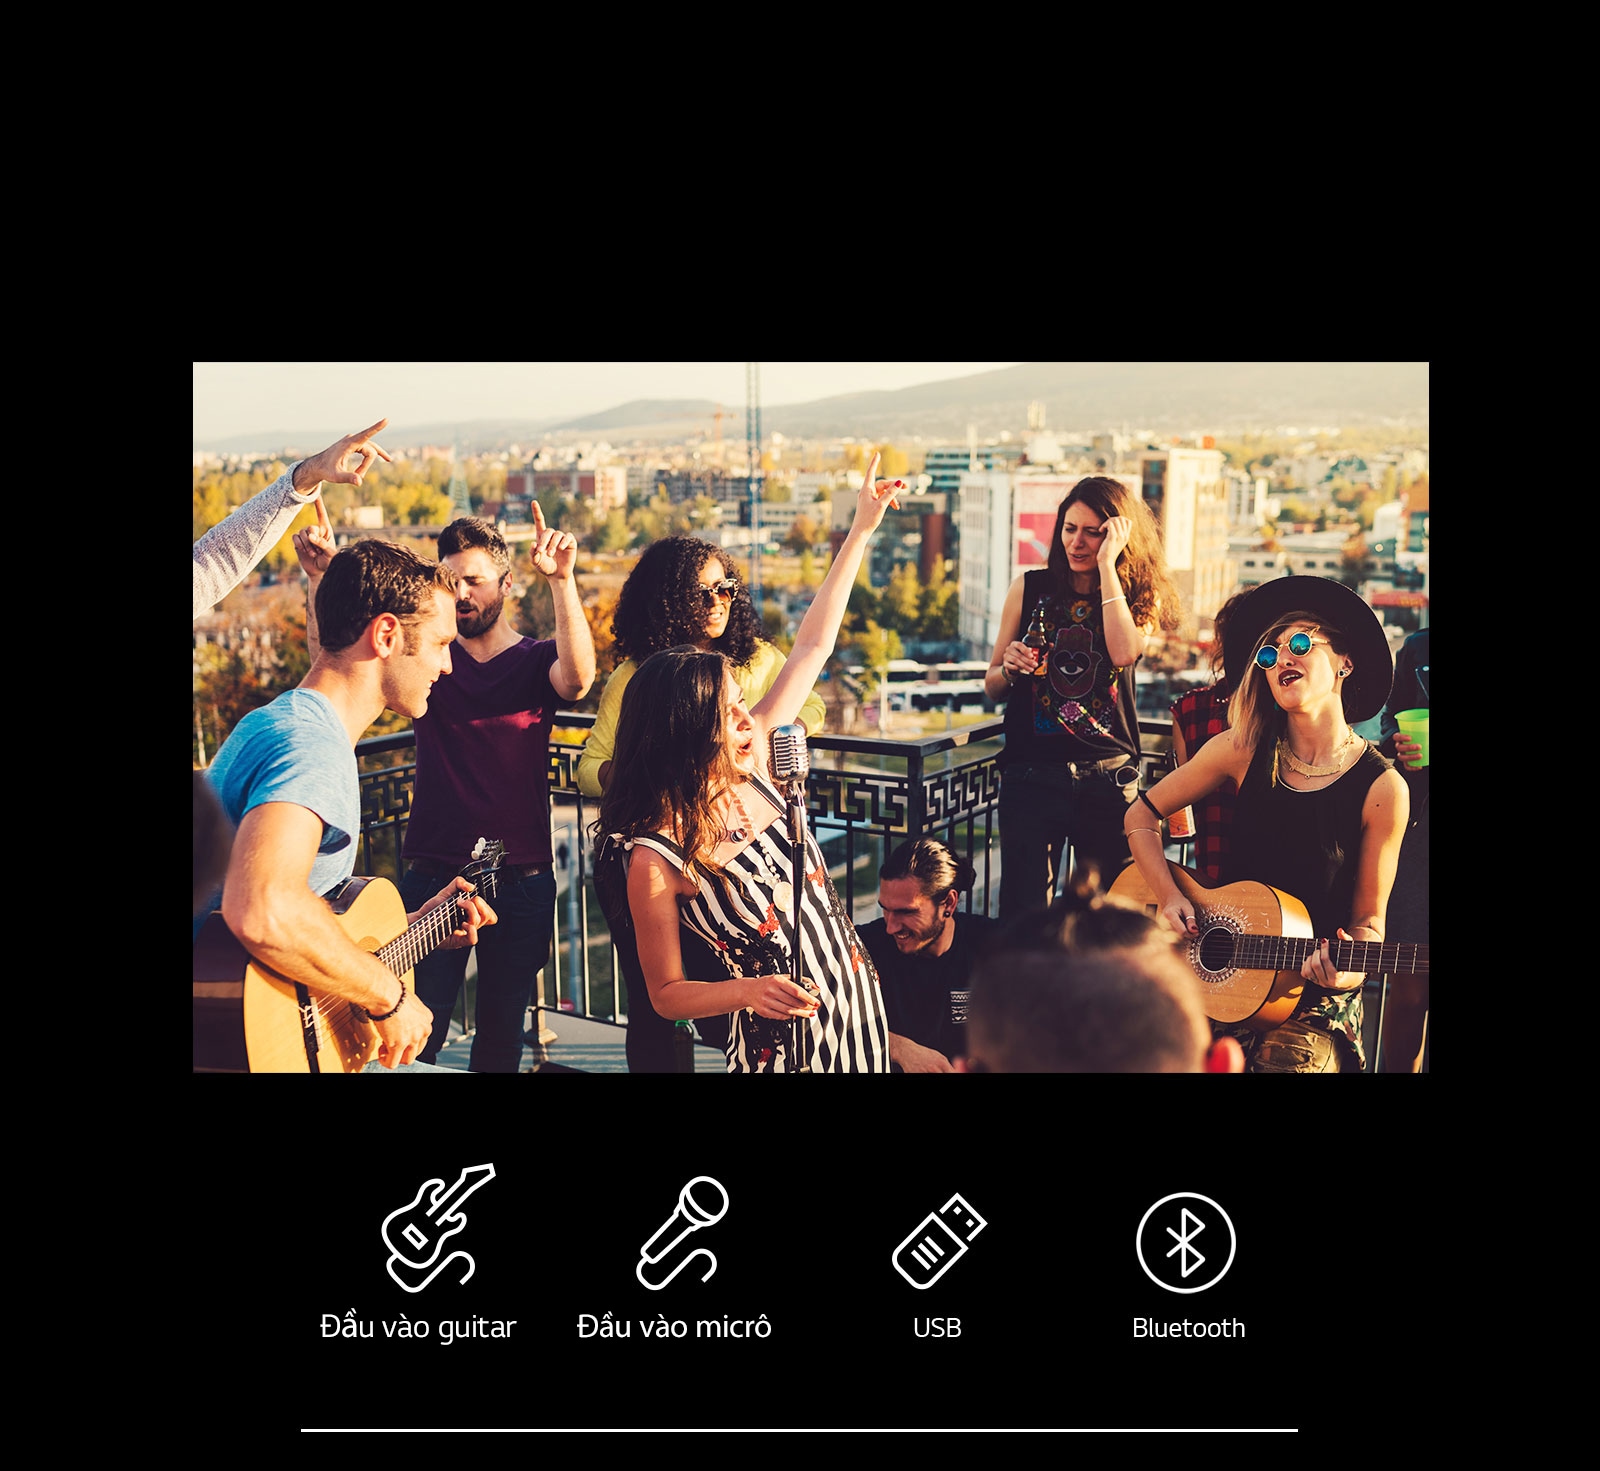 Có nhiều người đang thưởng thức buổi hòa nhạc acoustic với LG XBOOM XL7S. Bên dưới hình ảnh, có đàn guitar